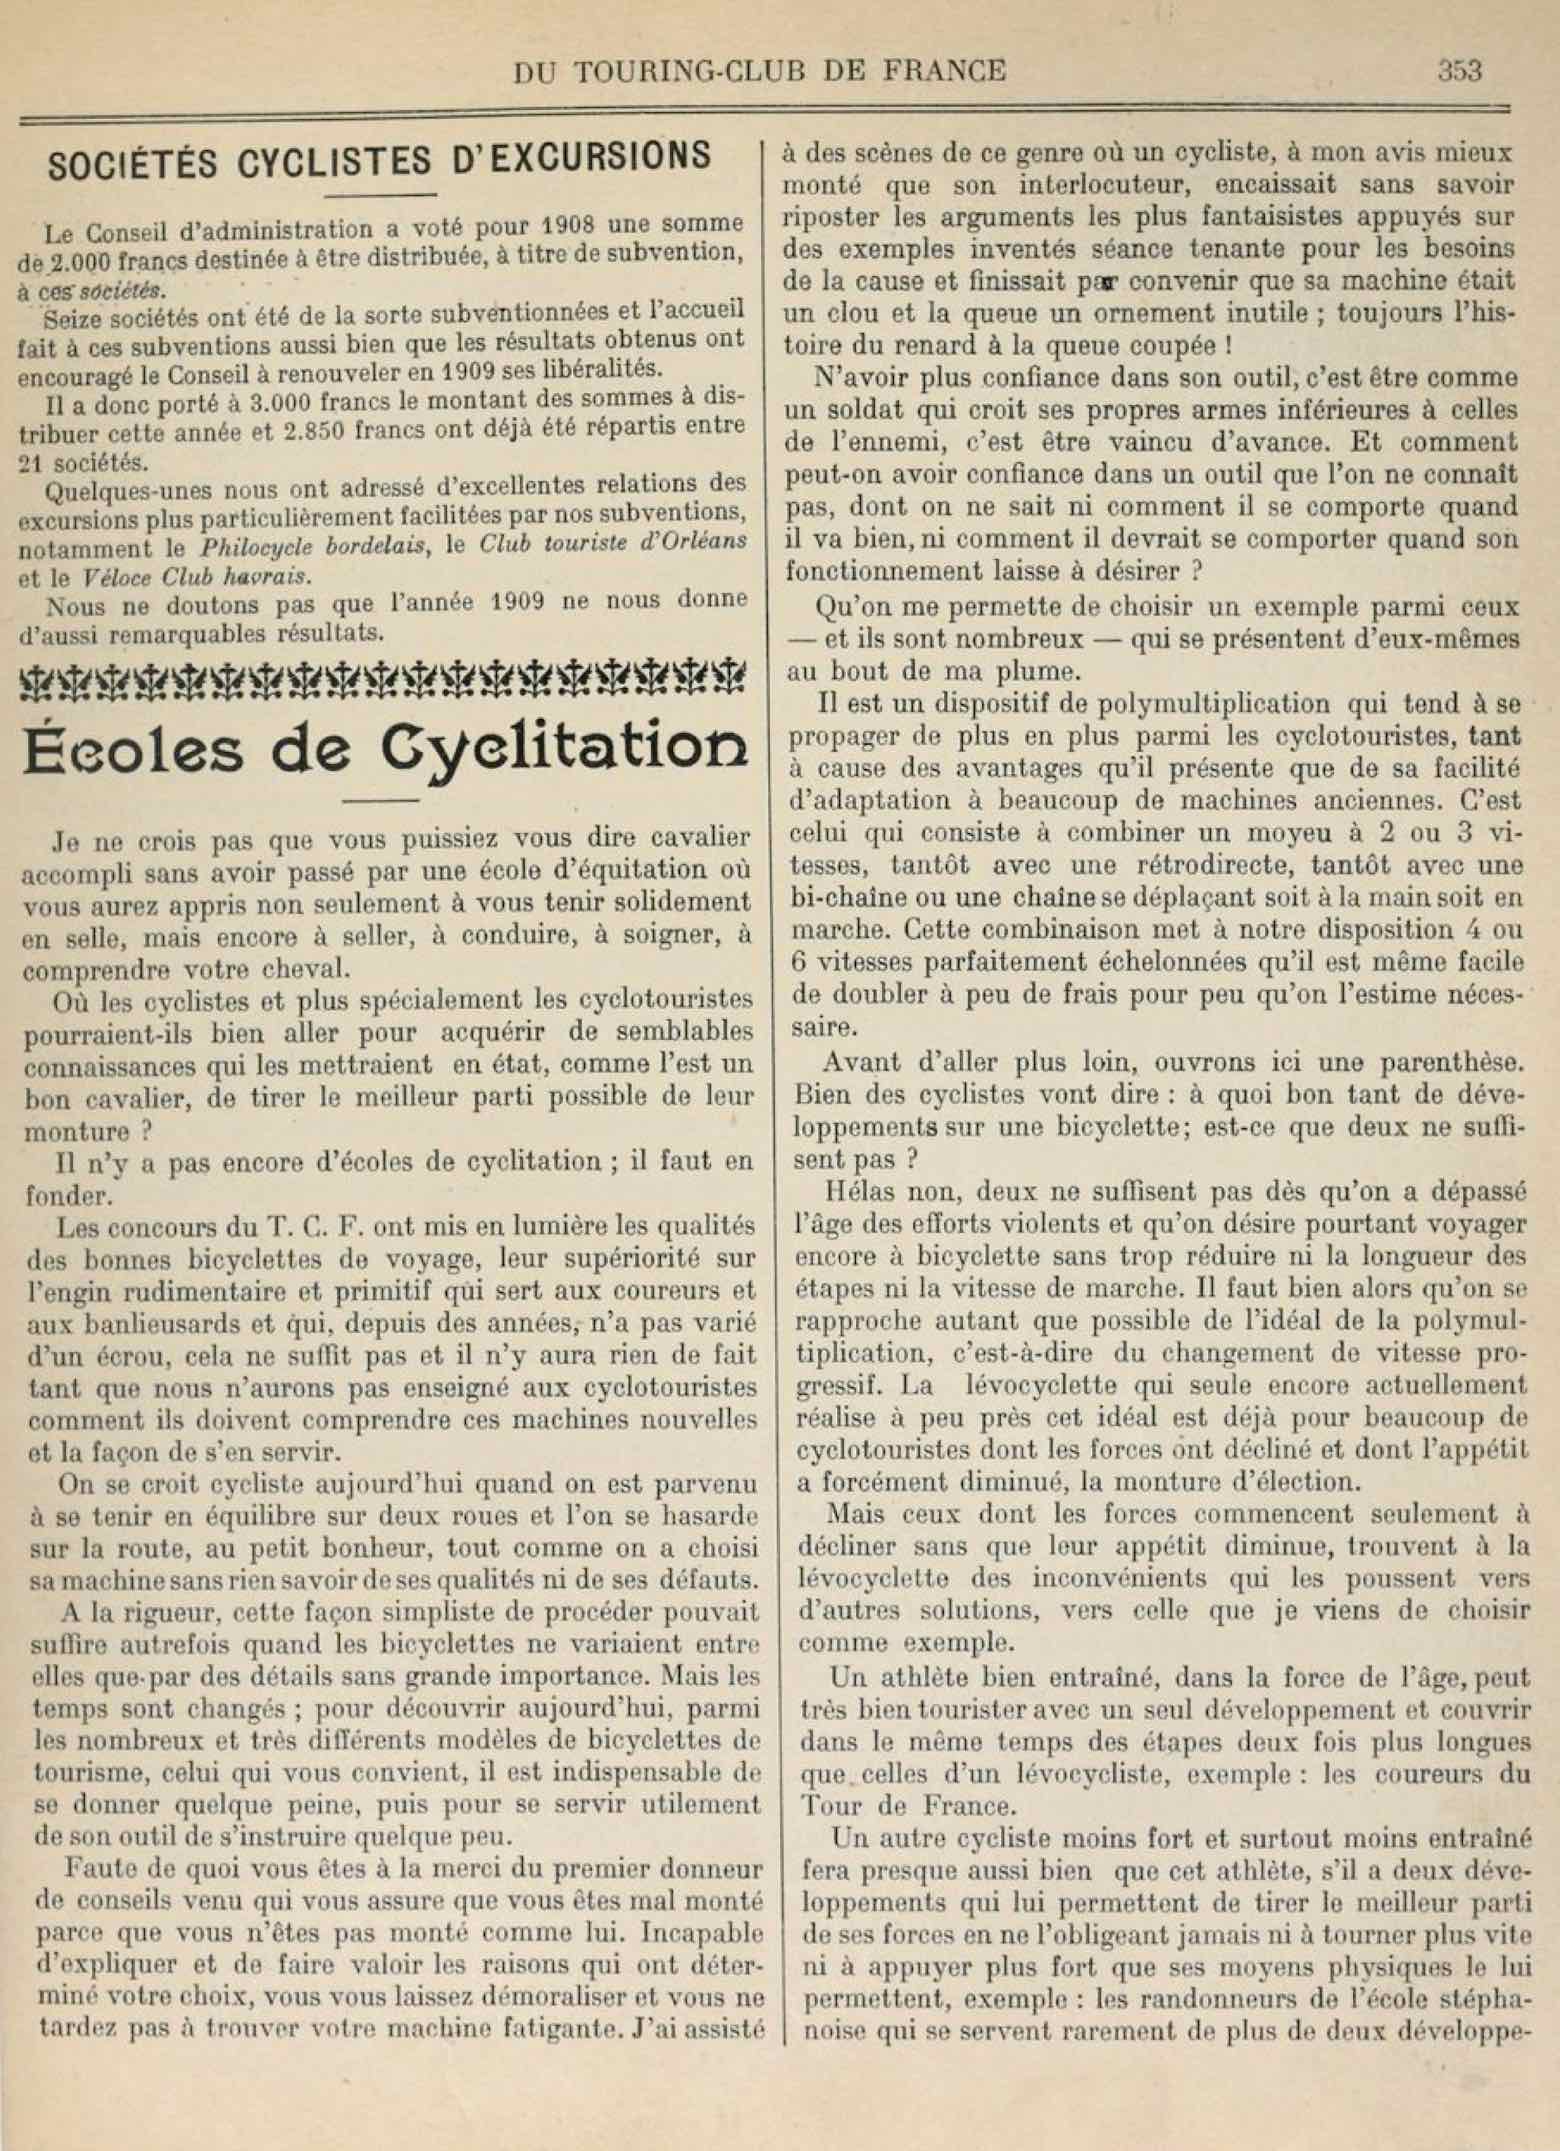 T.C.F. Revue Mensuelle August 1909 - Ecoles de Cyclitation scan 1 main image